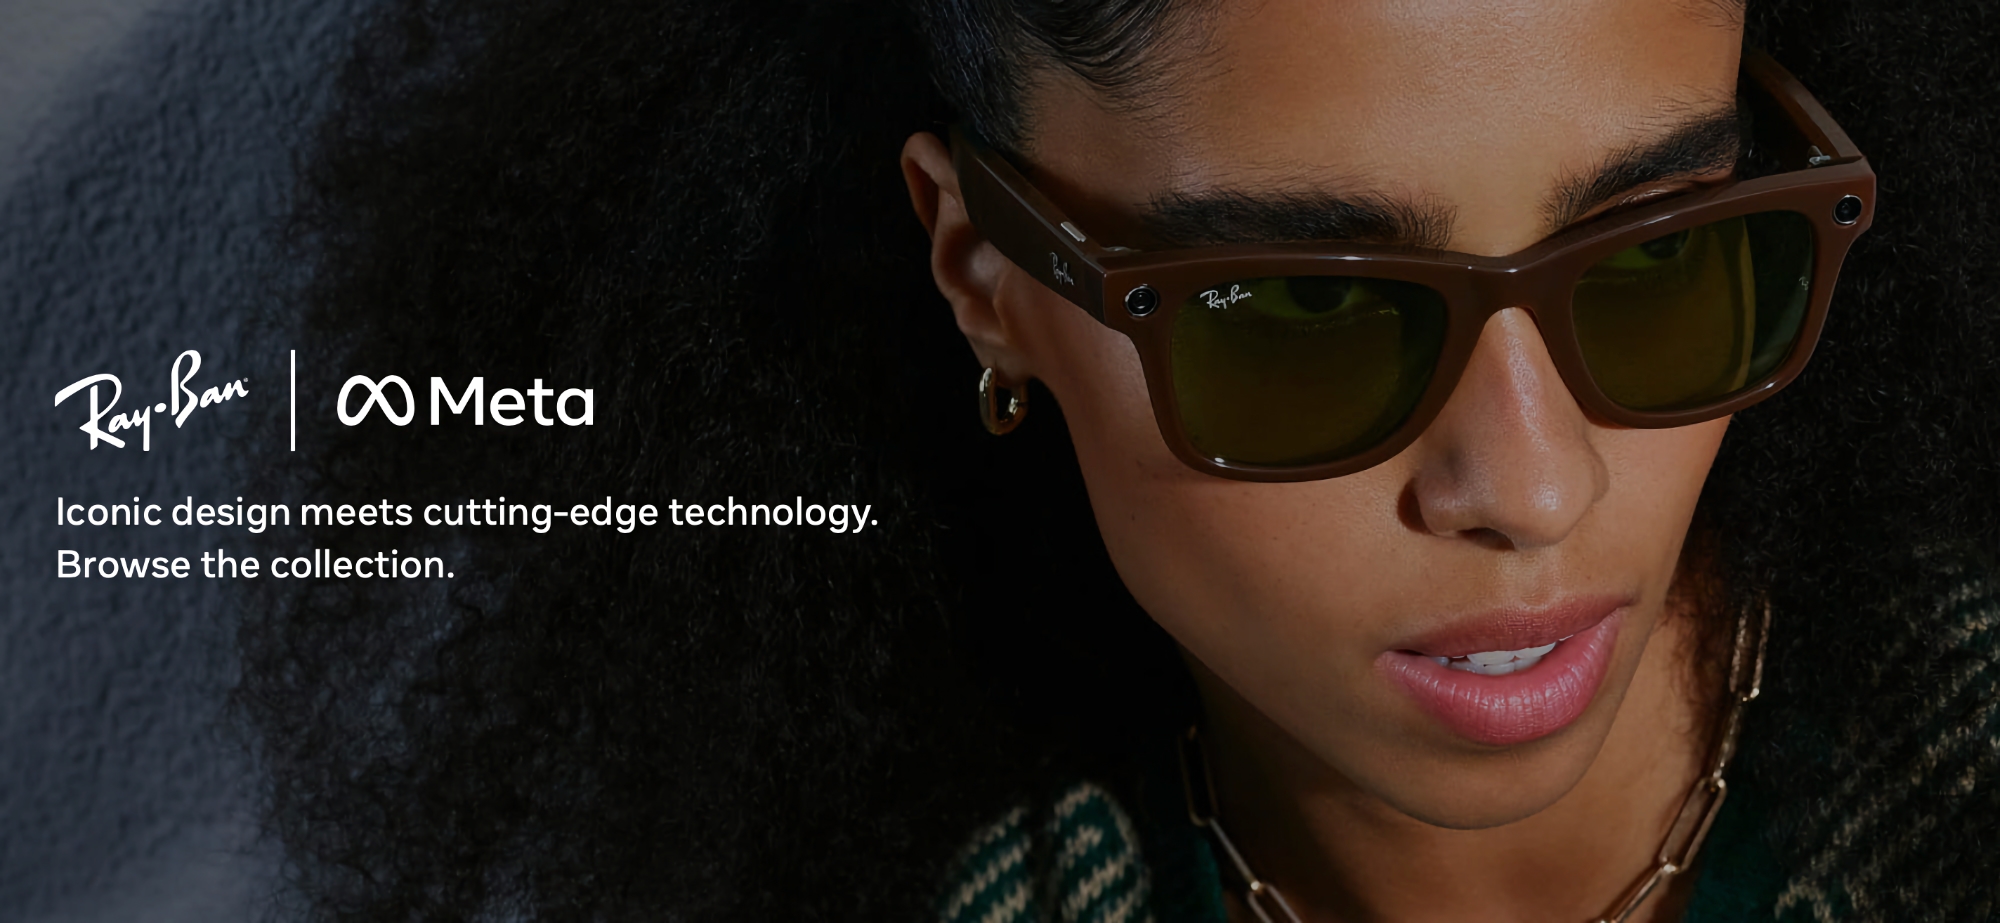 Meta och Ray-Ban presenterade nya smarta glasögon med Snapdragon AR1 Gen 1-chip, IPX4-skydd, 12 MP-kamera och möjlighet att strömma videor till Instagram och Facebook